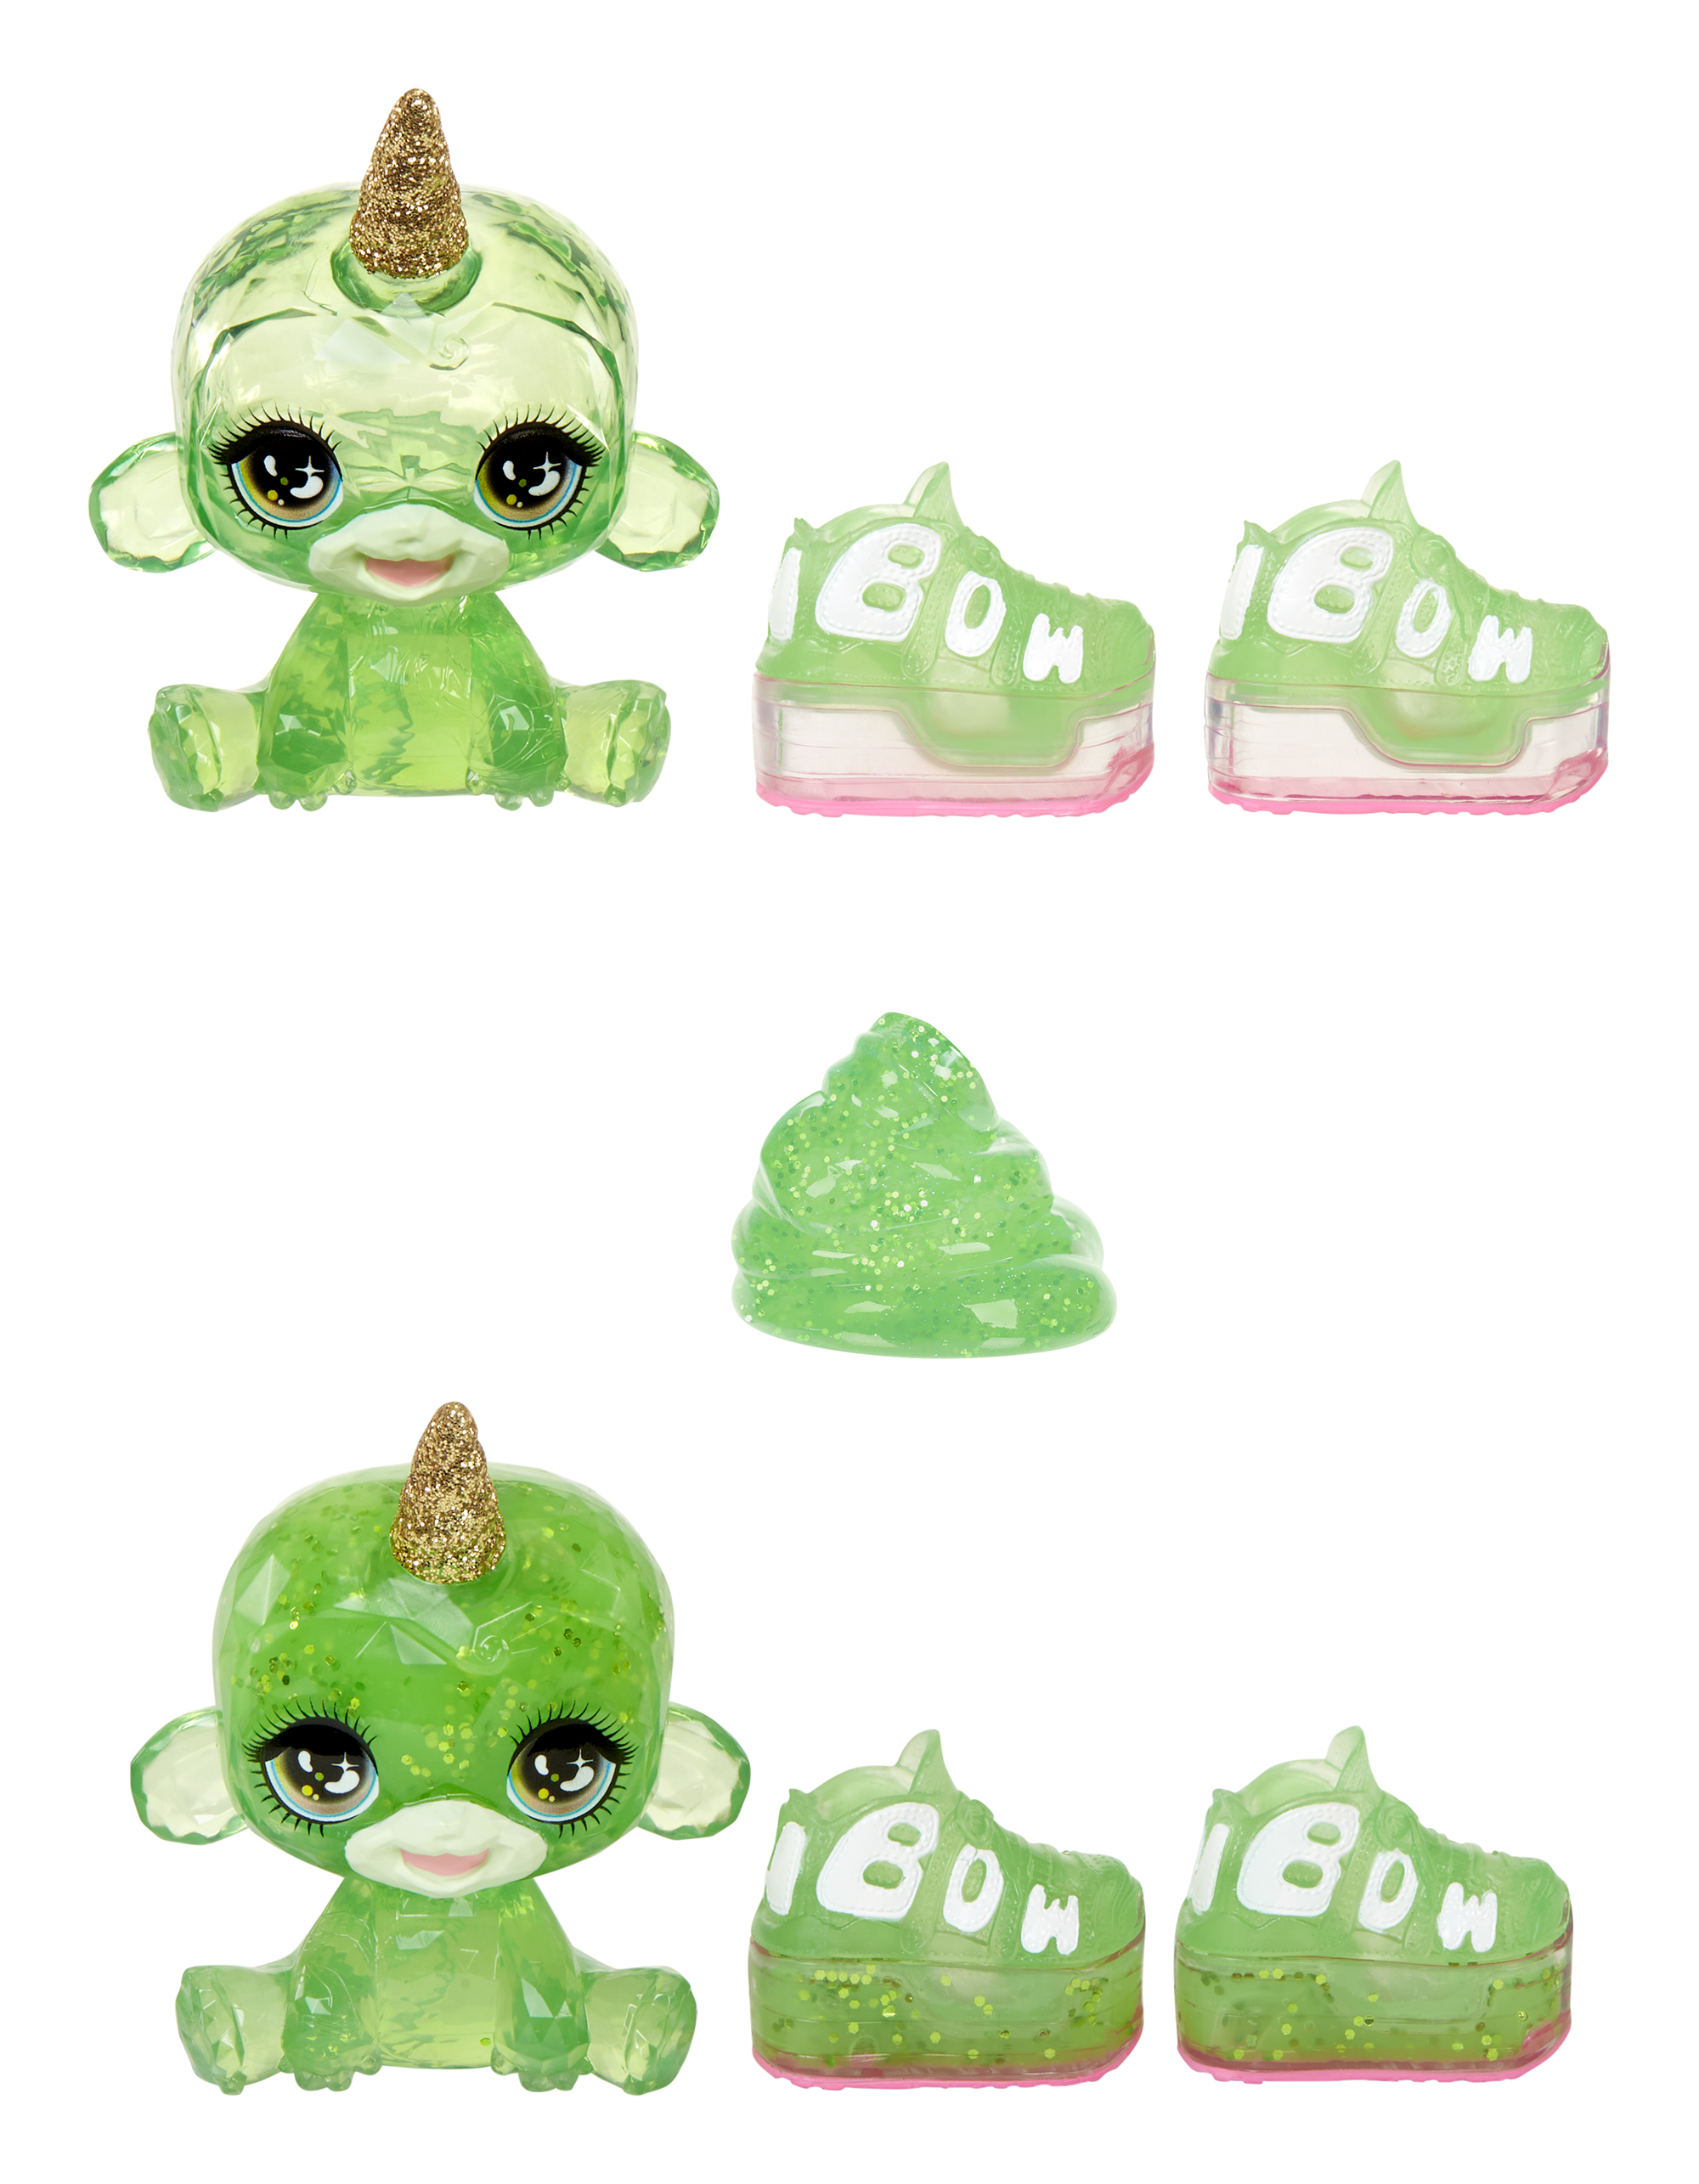 Rainbow high fashion doll con slime  & cucciolo – jade (verde) - bambola scintillante da 28 cm con slime, animale magico e accessori alla moda - Rainbow High